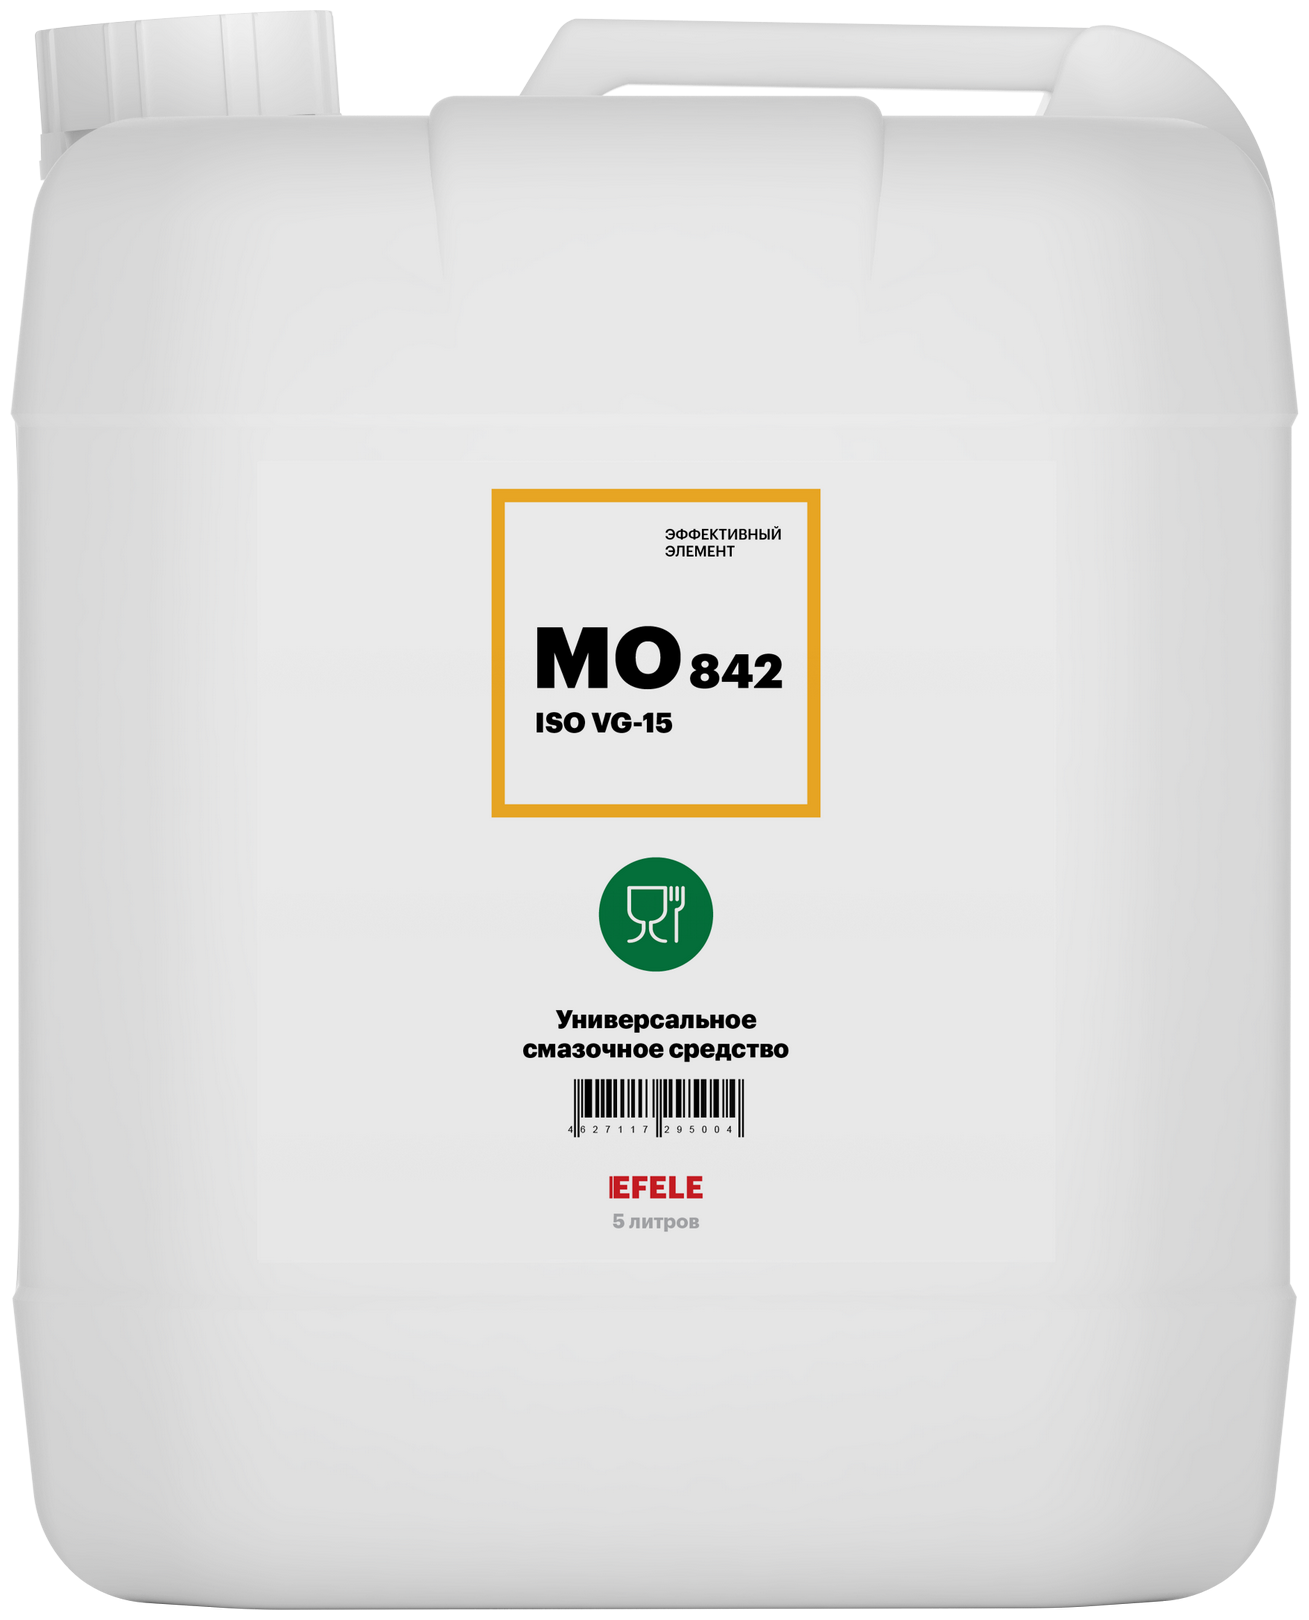 Медицинское масло с пищевым допуском EFELE MO-842 VG-15 (5 л)